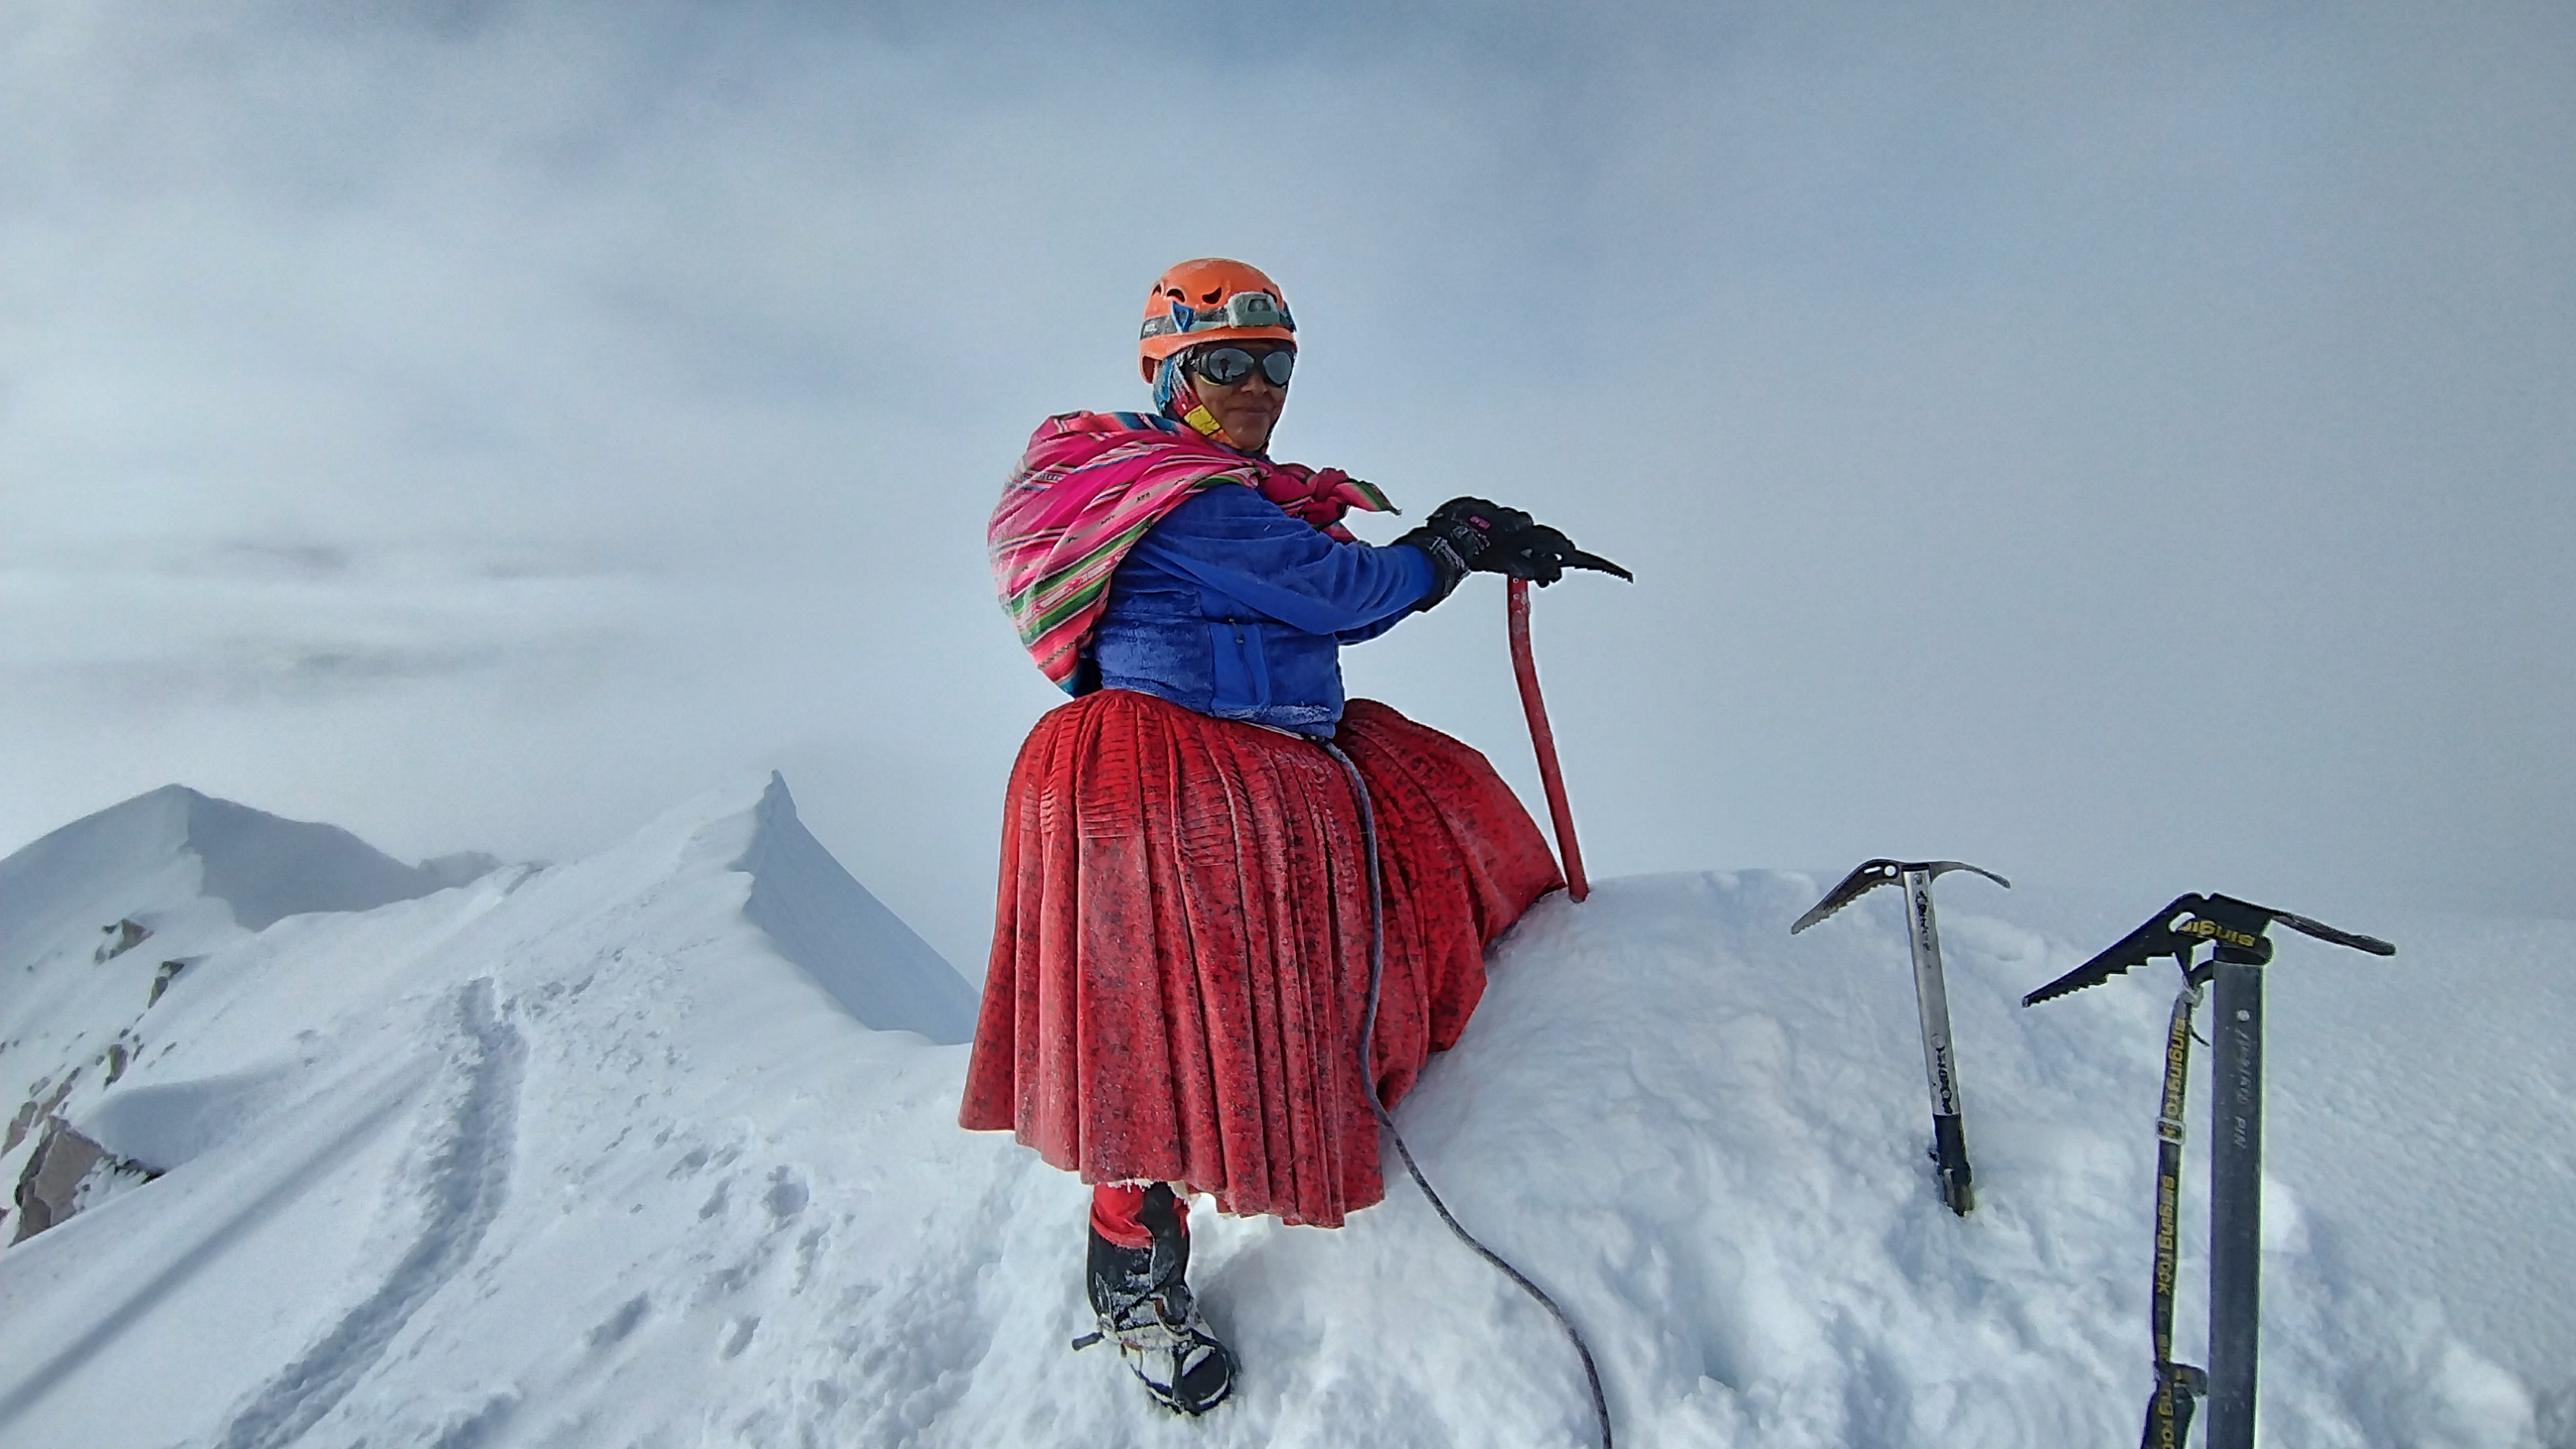 Las cholitas escaladoras de Bolivia quieren conquistar el Everest: “Hemos demostrado que podemos hacer lo mismo que los hombres”